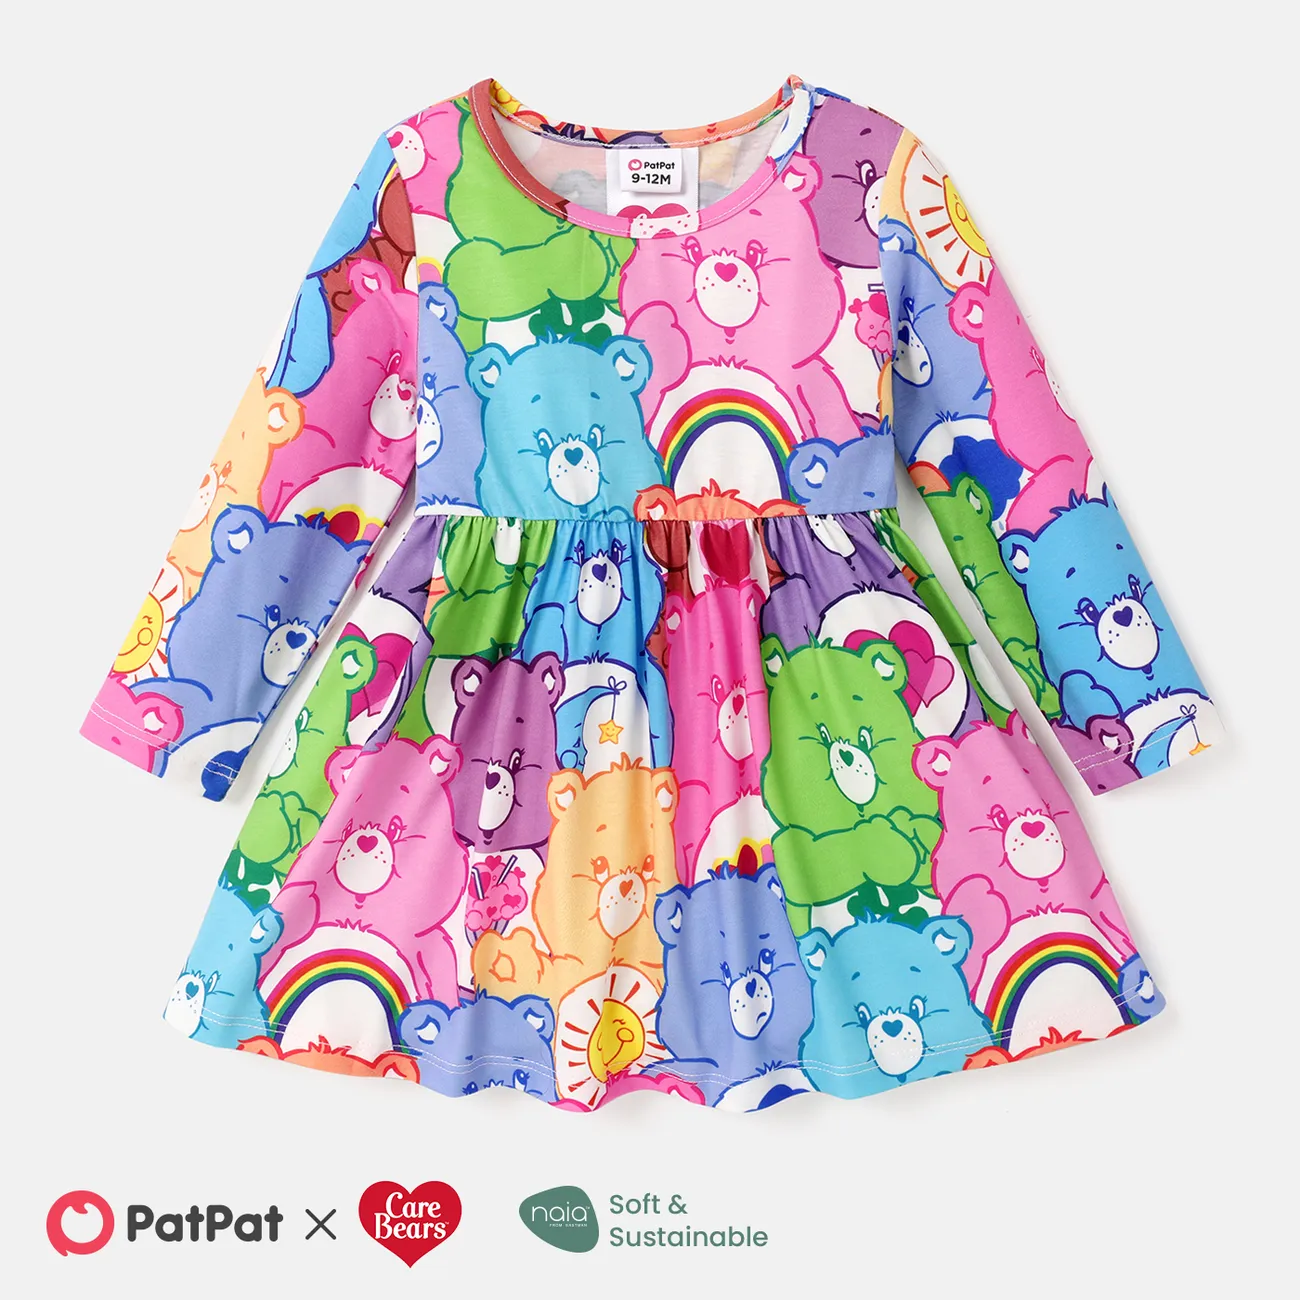 Care Bears Baby/Toddler Girl Naia™ Character Print Long-sleeve Dress   big image 1